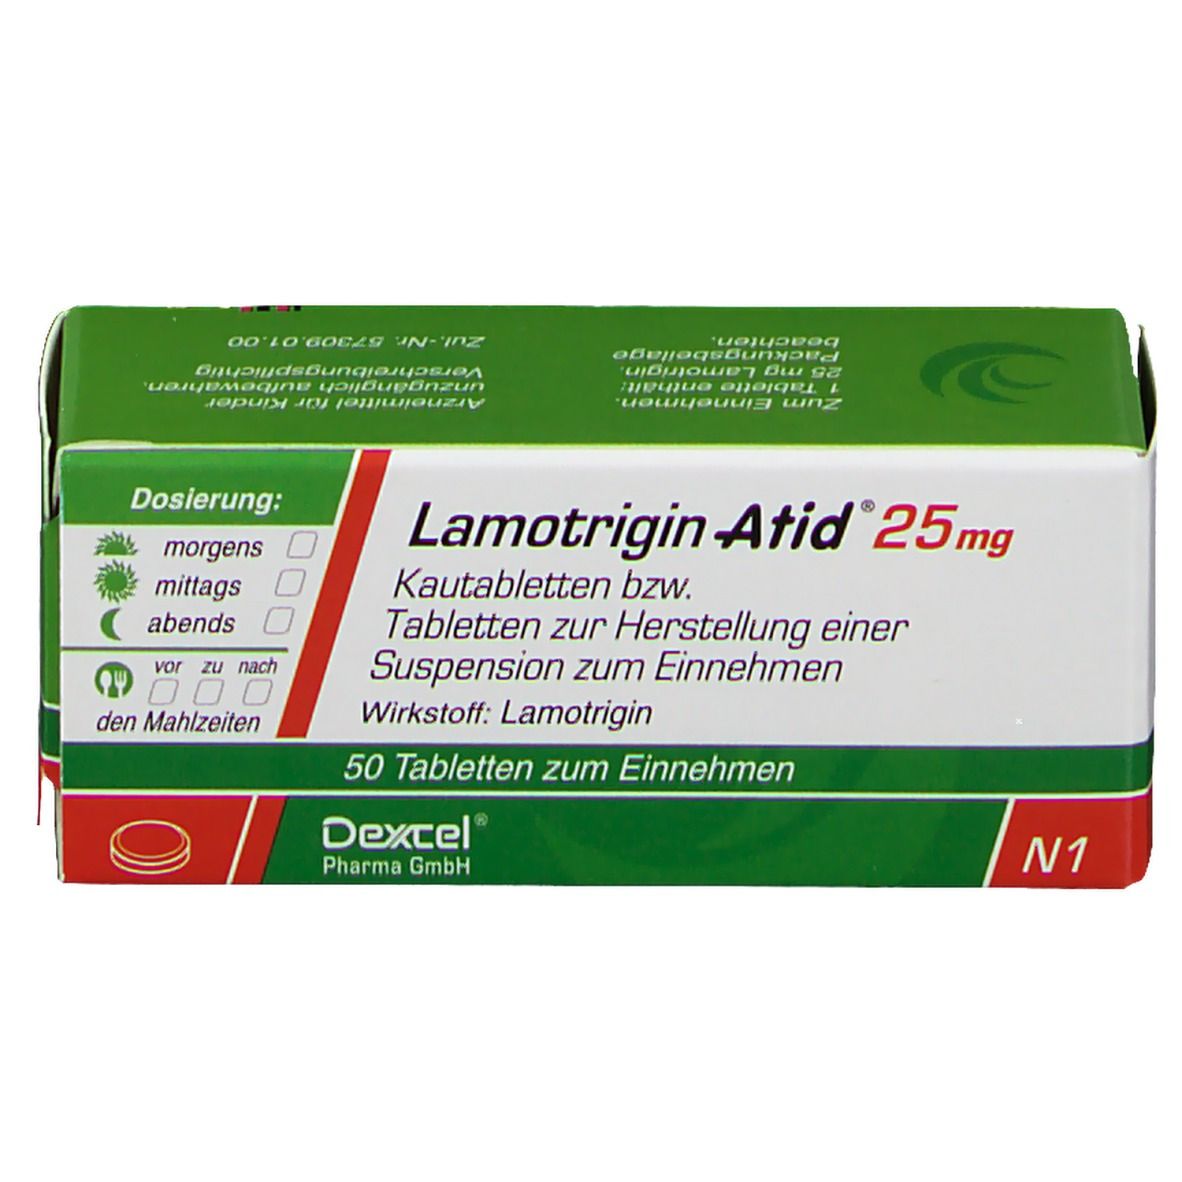 Lamotrigin Atid® 25 mg